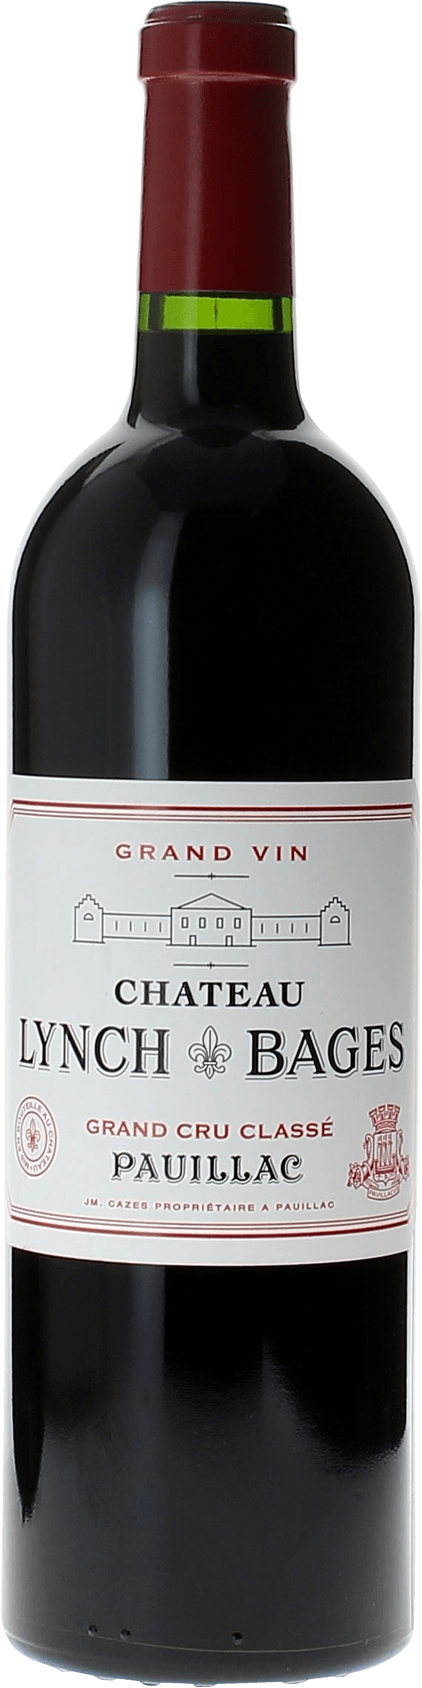 Lynch bages 1991 5 me Grand cru class Pauillac, Bordeaux rouge